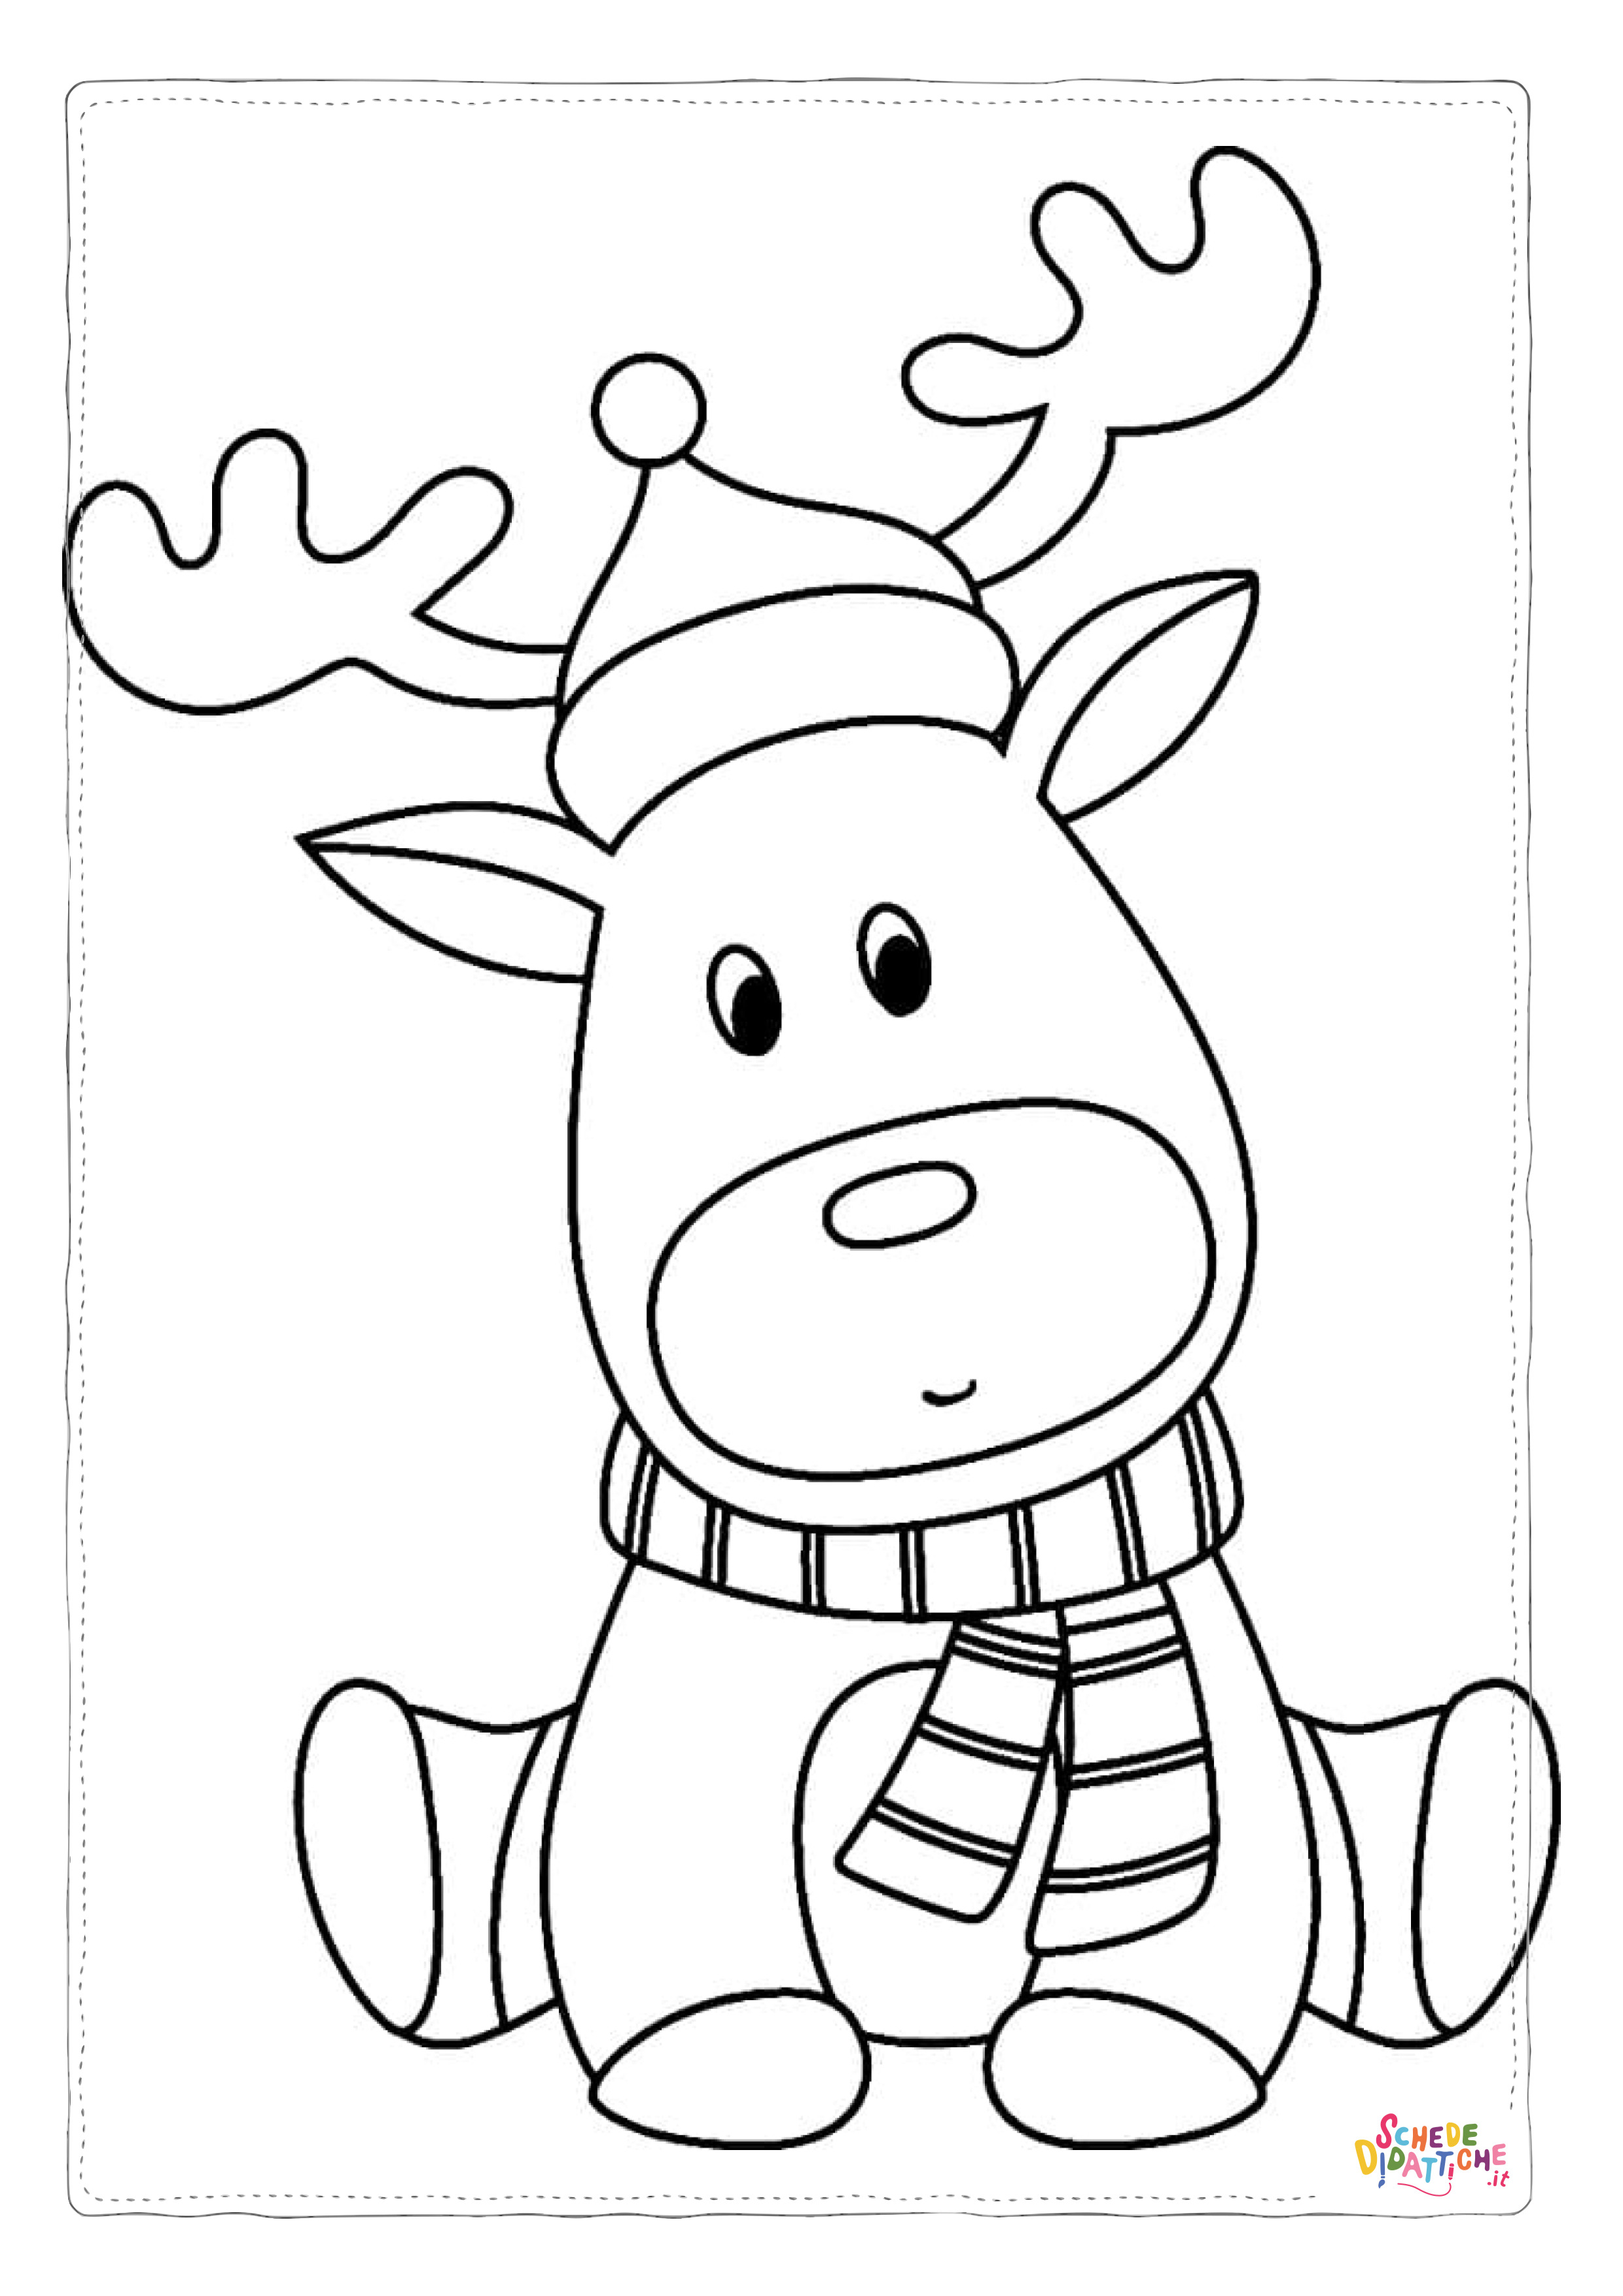 Disegno di renna di Natale da stampare e colorare 23